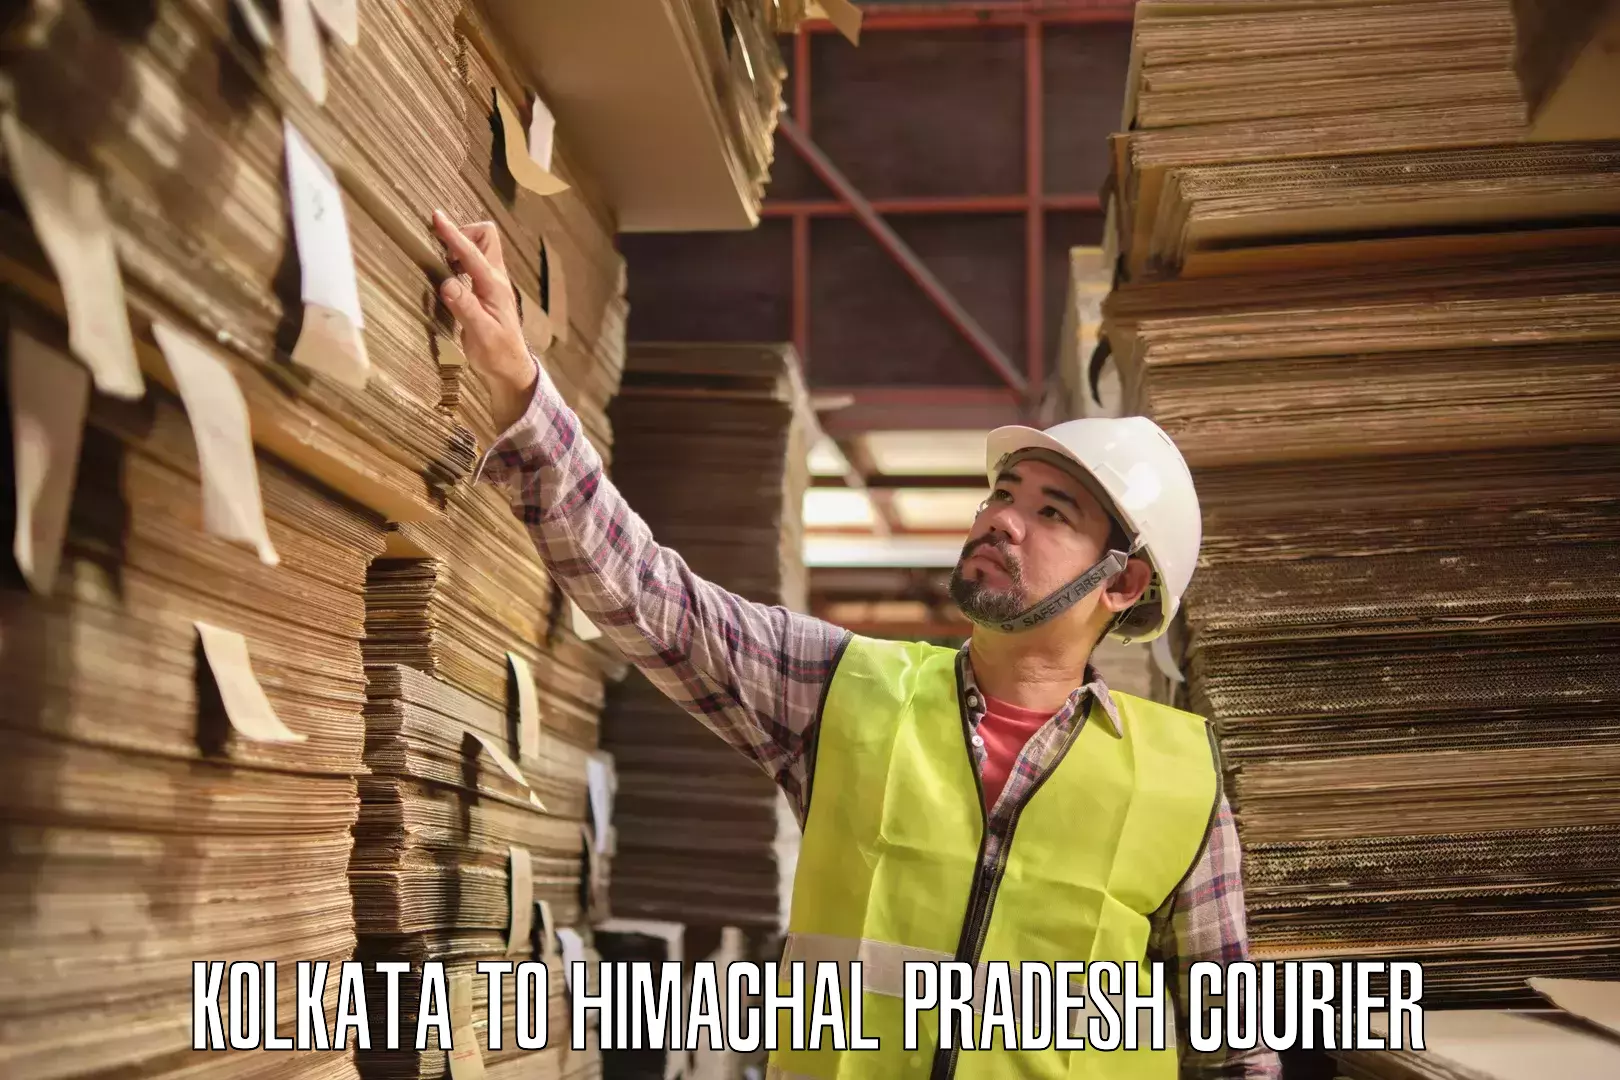 Sustainable courier practices Kolkata to Dalhousie